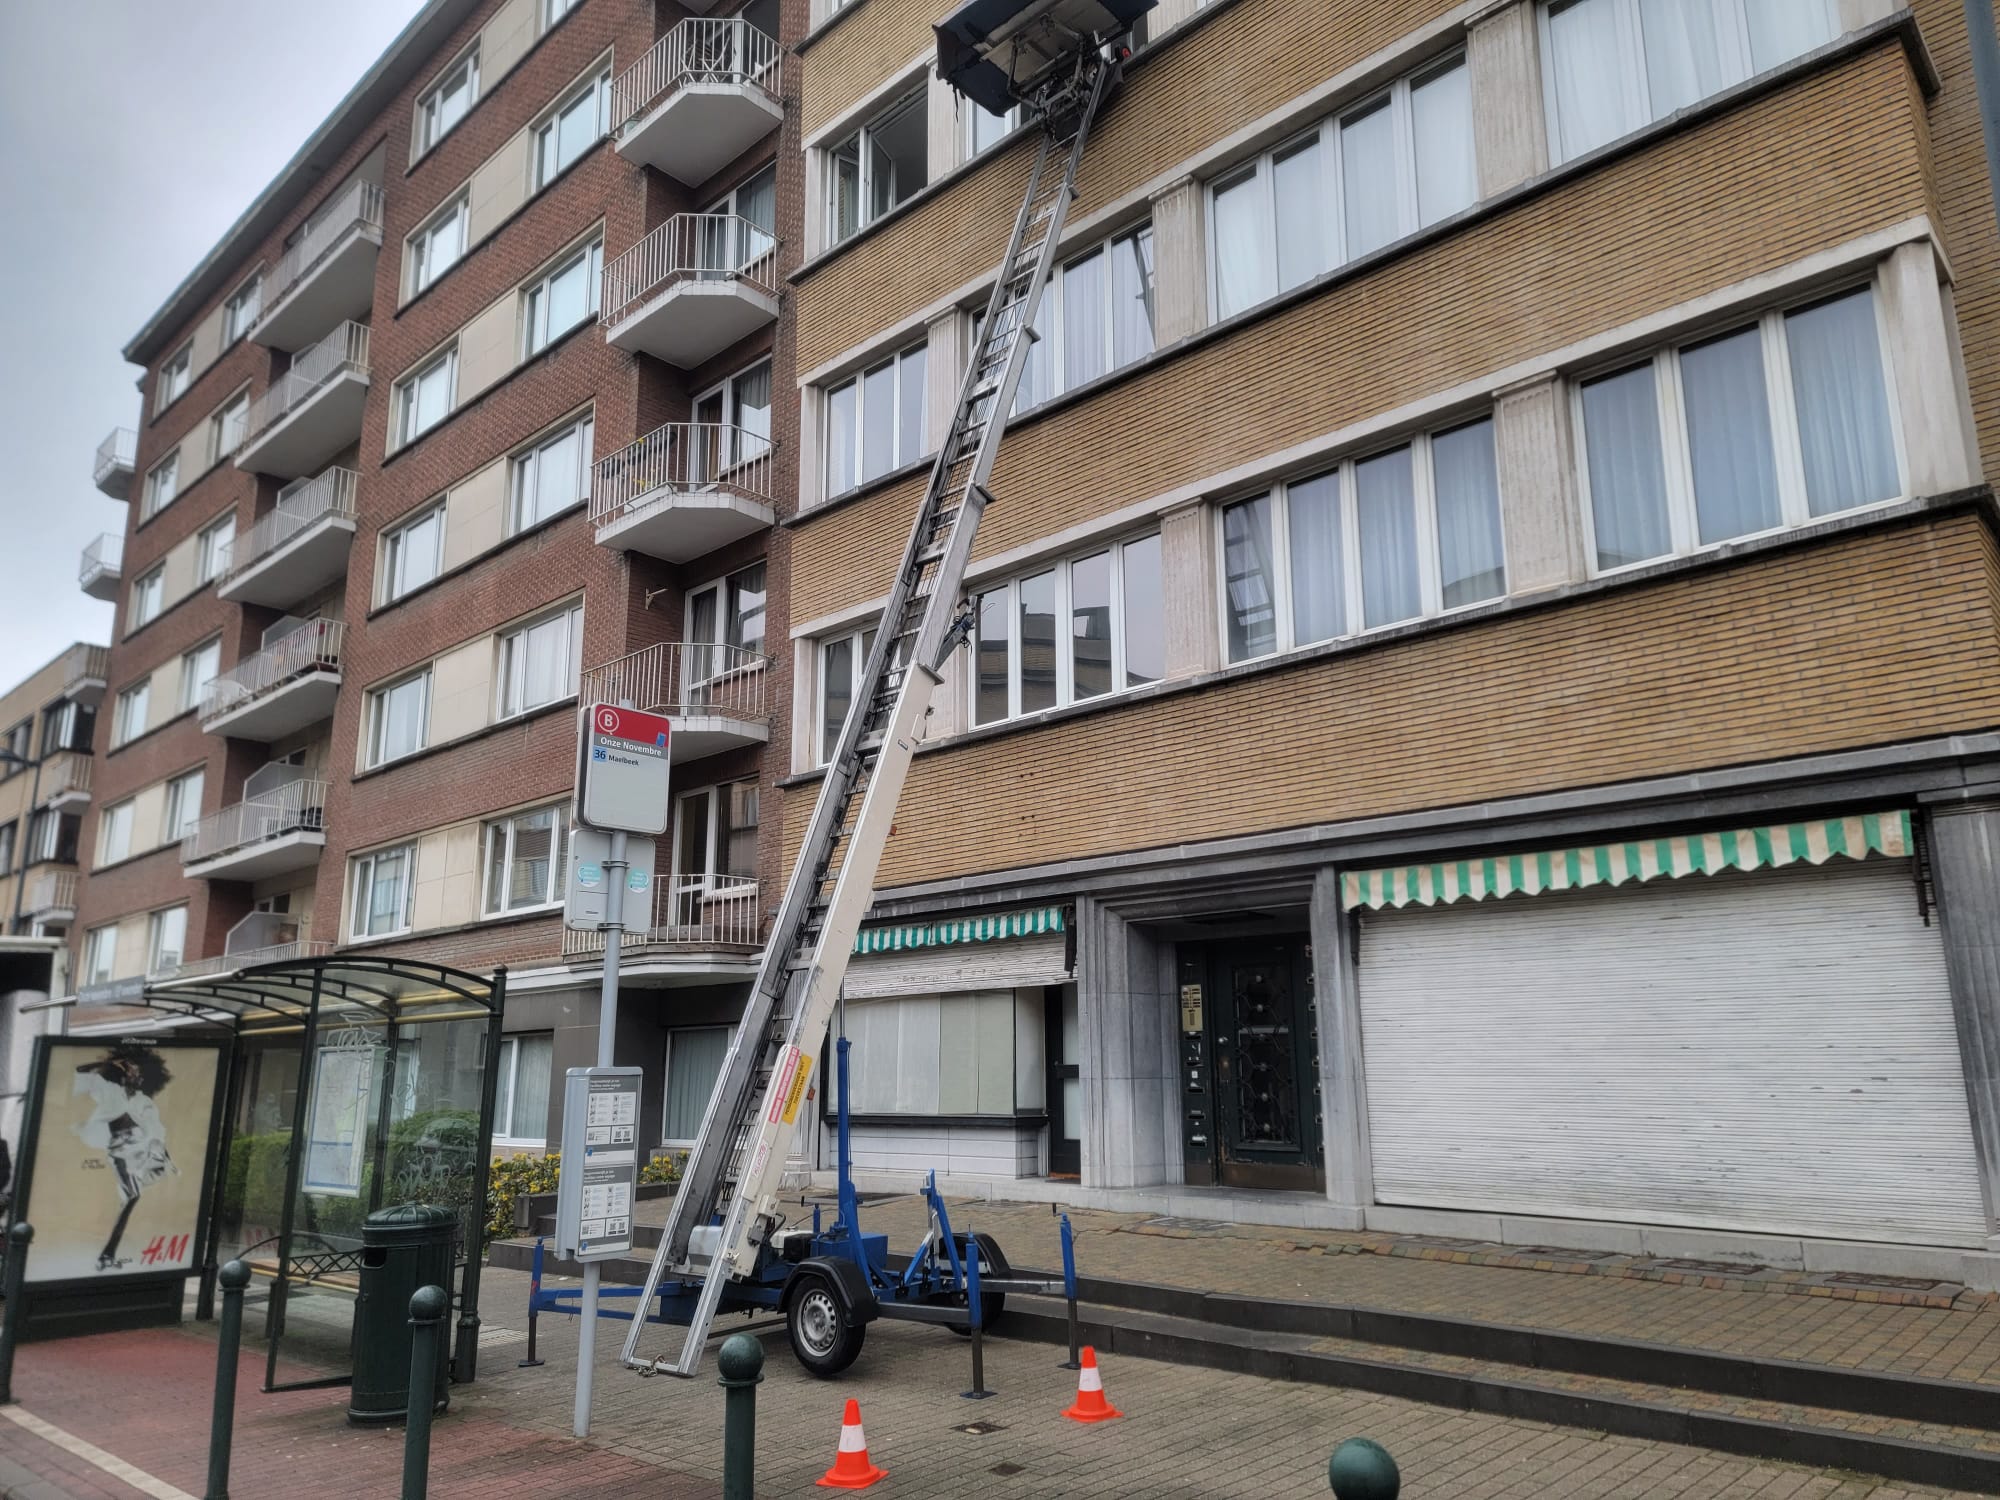 ladderlift huren goedkoop Sint-Pieters-Woluwe